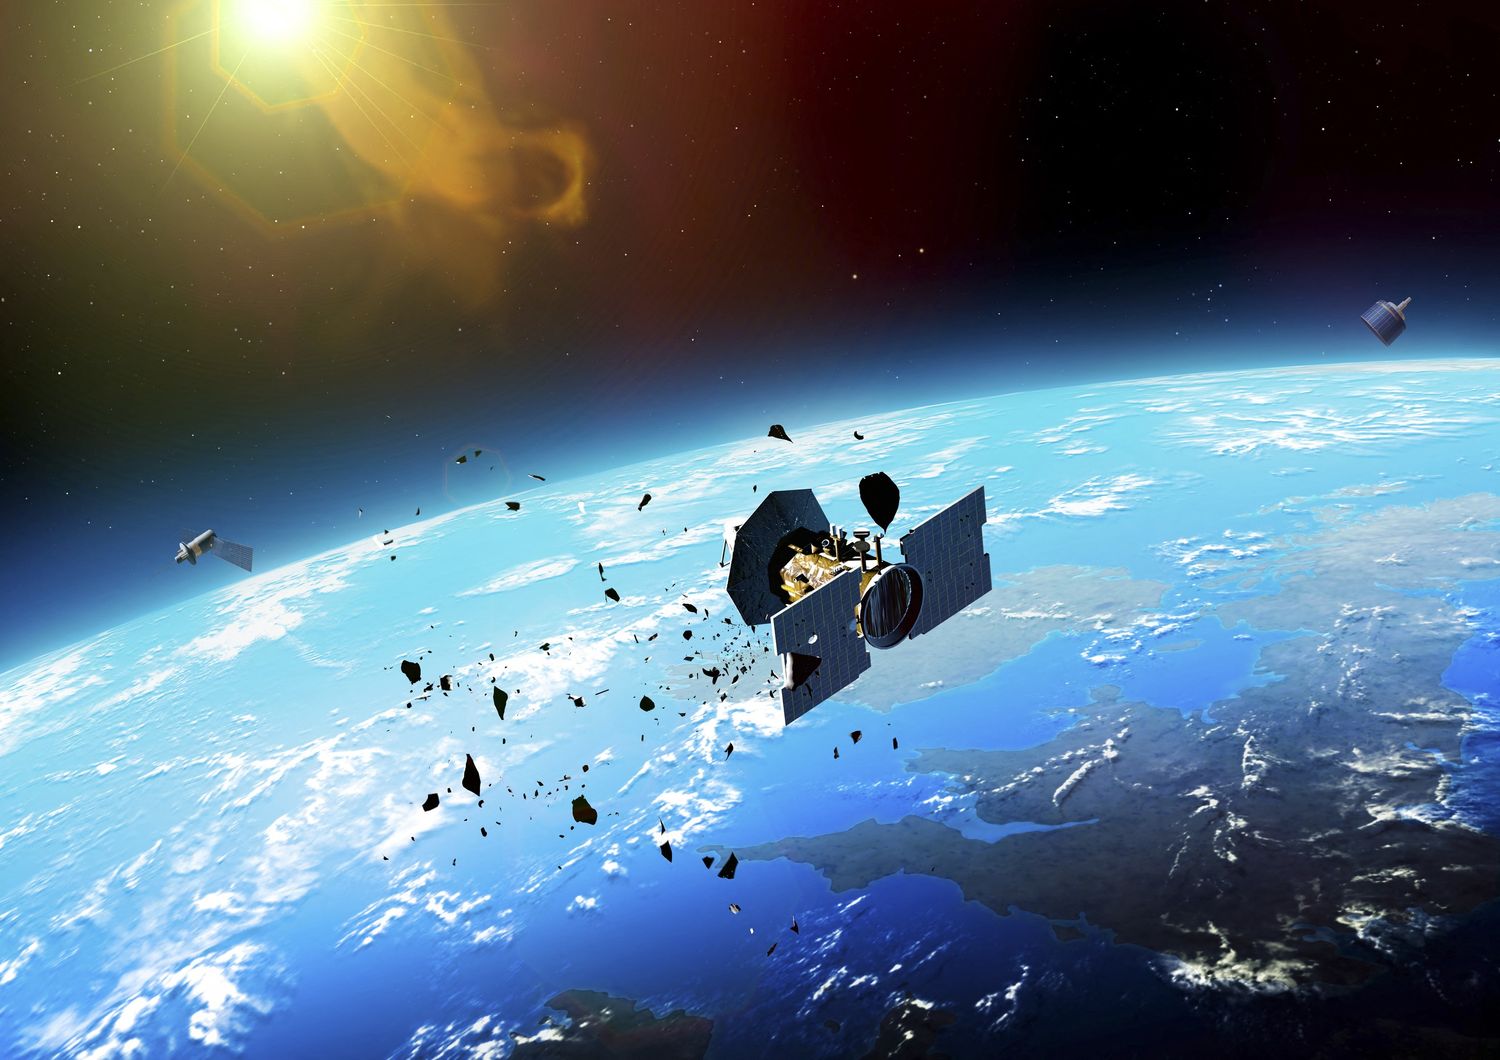 Una simulazione grafica di uno scontro tra un satellite e detriti spaziali